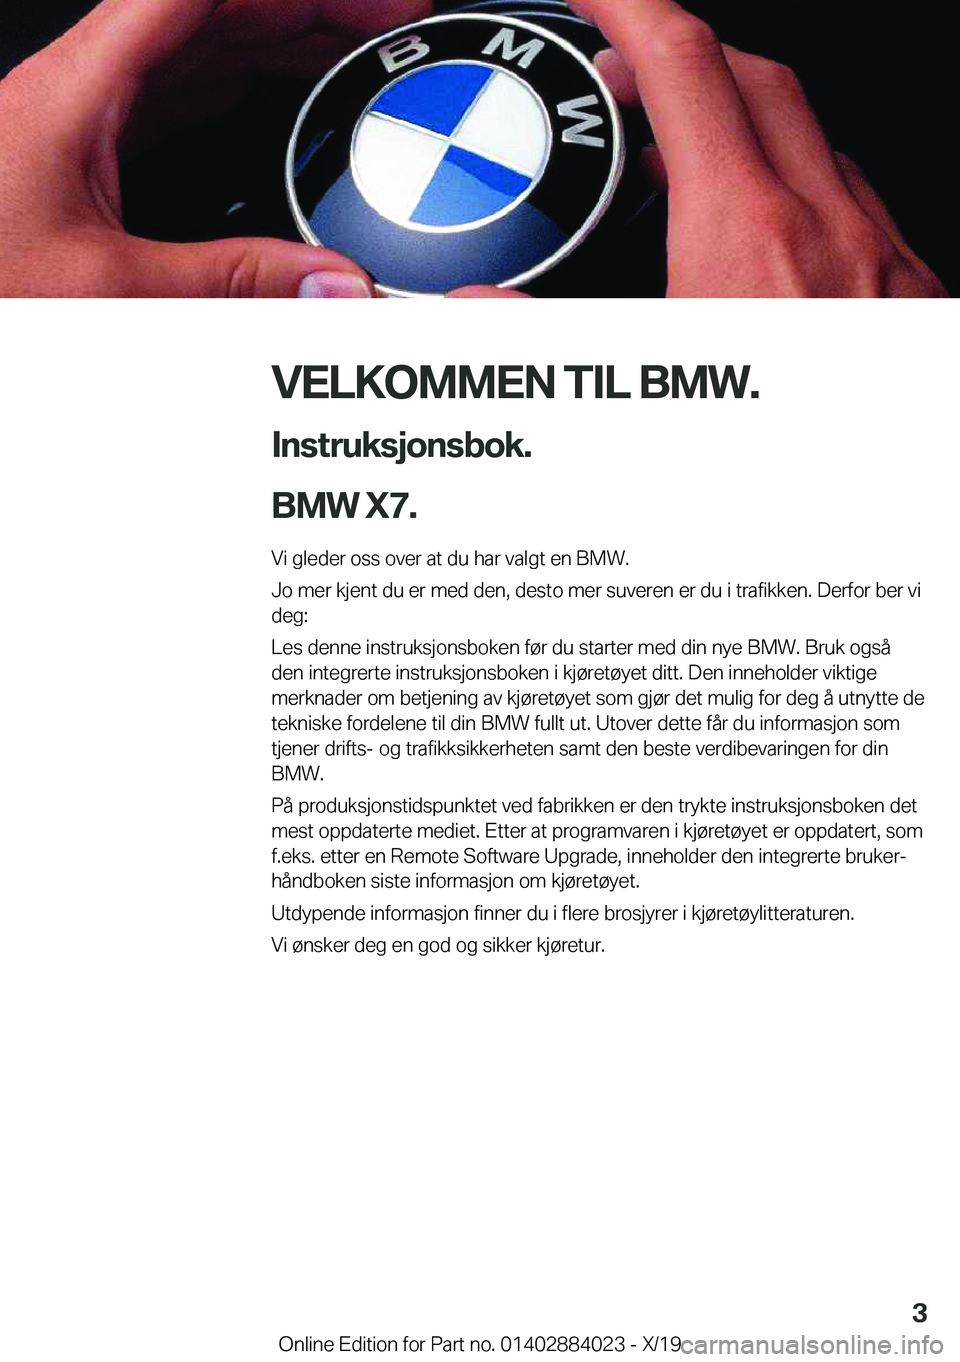 BMW X7 2020  InstruksjonsbØker (in Norwegian) �V�E�L�K�O�M�M�E�N��T�I�L��B�M�W�.�I�n�s�t�r�u�k�s�j�o�n�s�b�o�k�.
�B�M�W��X�7�.
�V�i��g�l�e�d�e�r��o�s�s��o�v�e�r��a�t��d�u��h�a�r��v�a�l�g�t��e�n��B�M�W�.
�J�o��m�e�r��k�j�e�n�t��d�u�